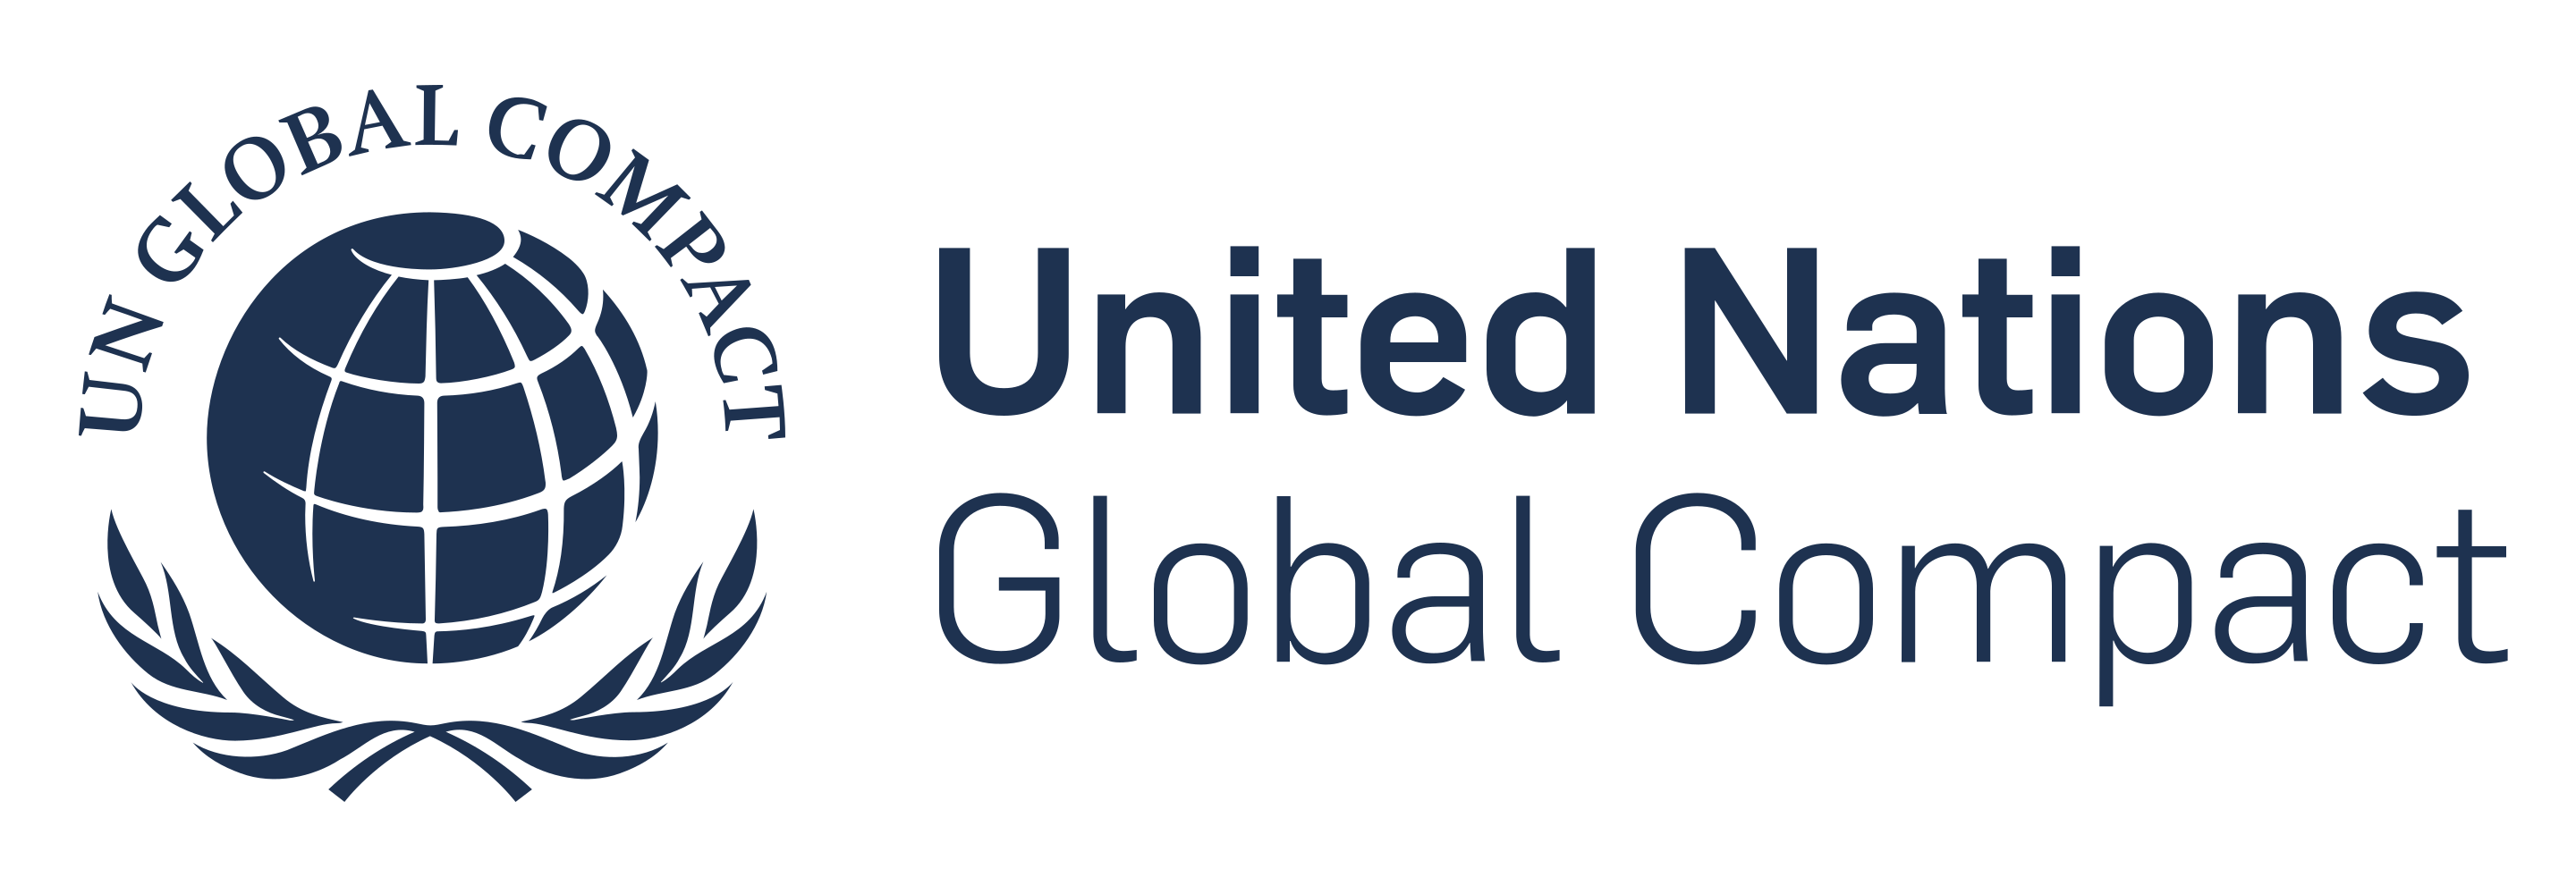 شركة سير السعودية تنضم للميثاق العالمي للأمم المتحدة